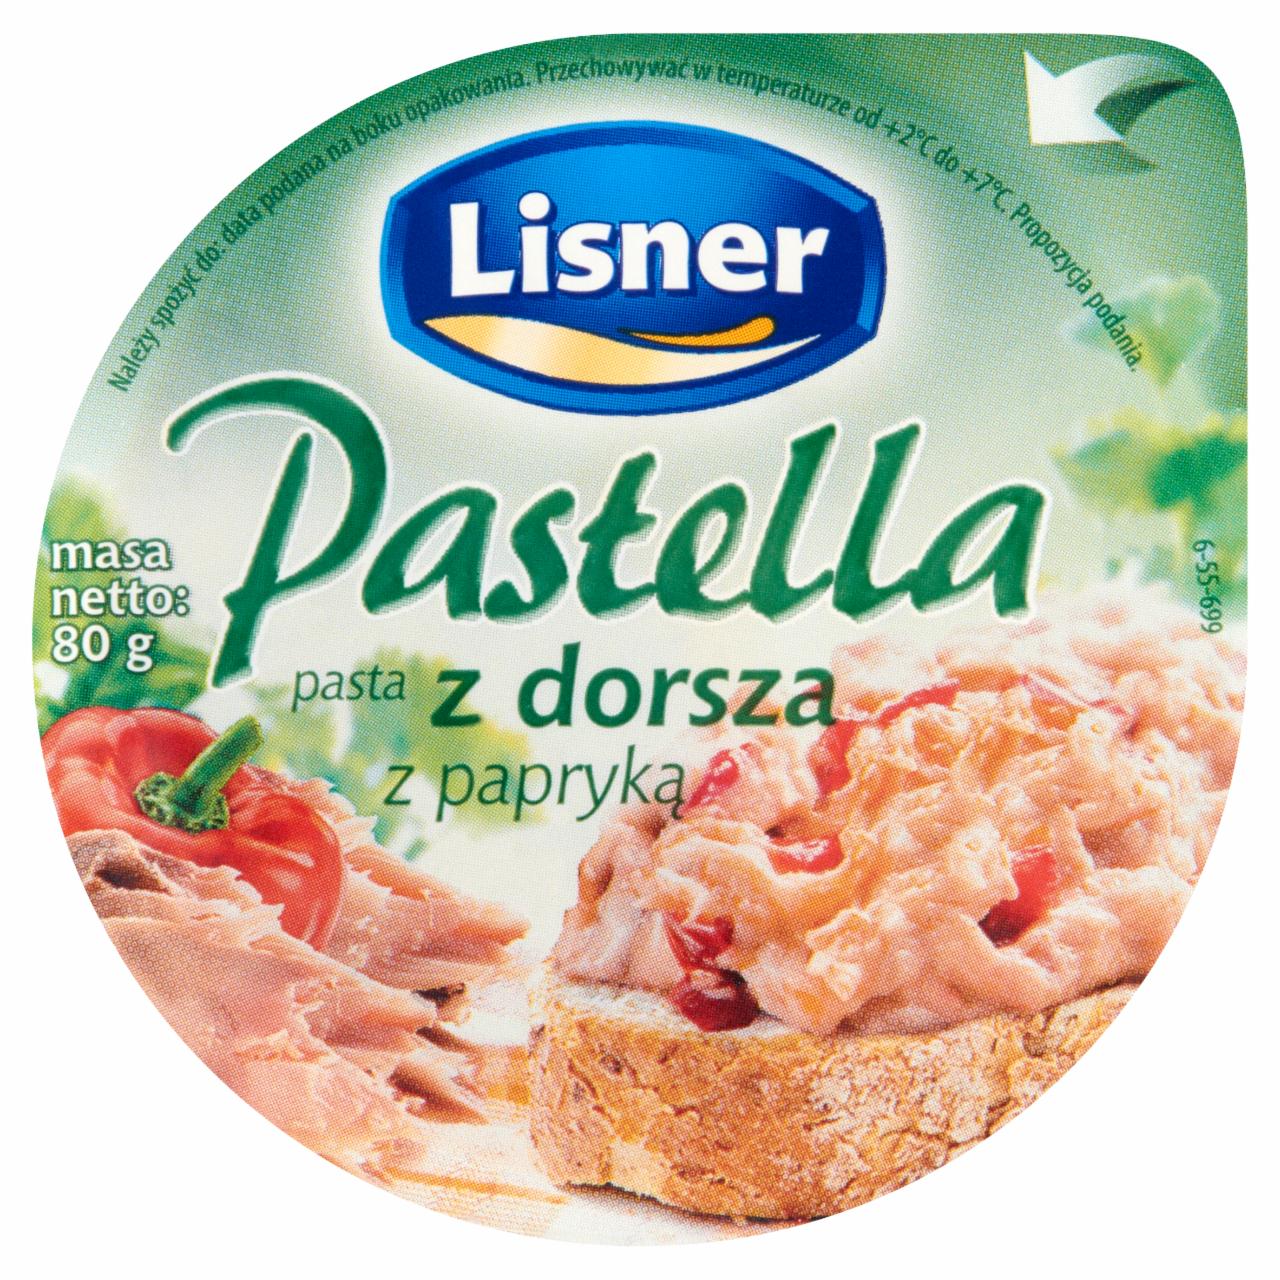 Zdjęcia - Lisner Pastella Pasta z dorsza z papryką 80 g